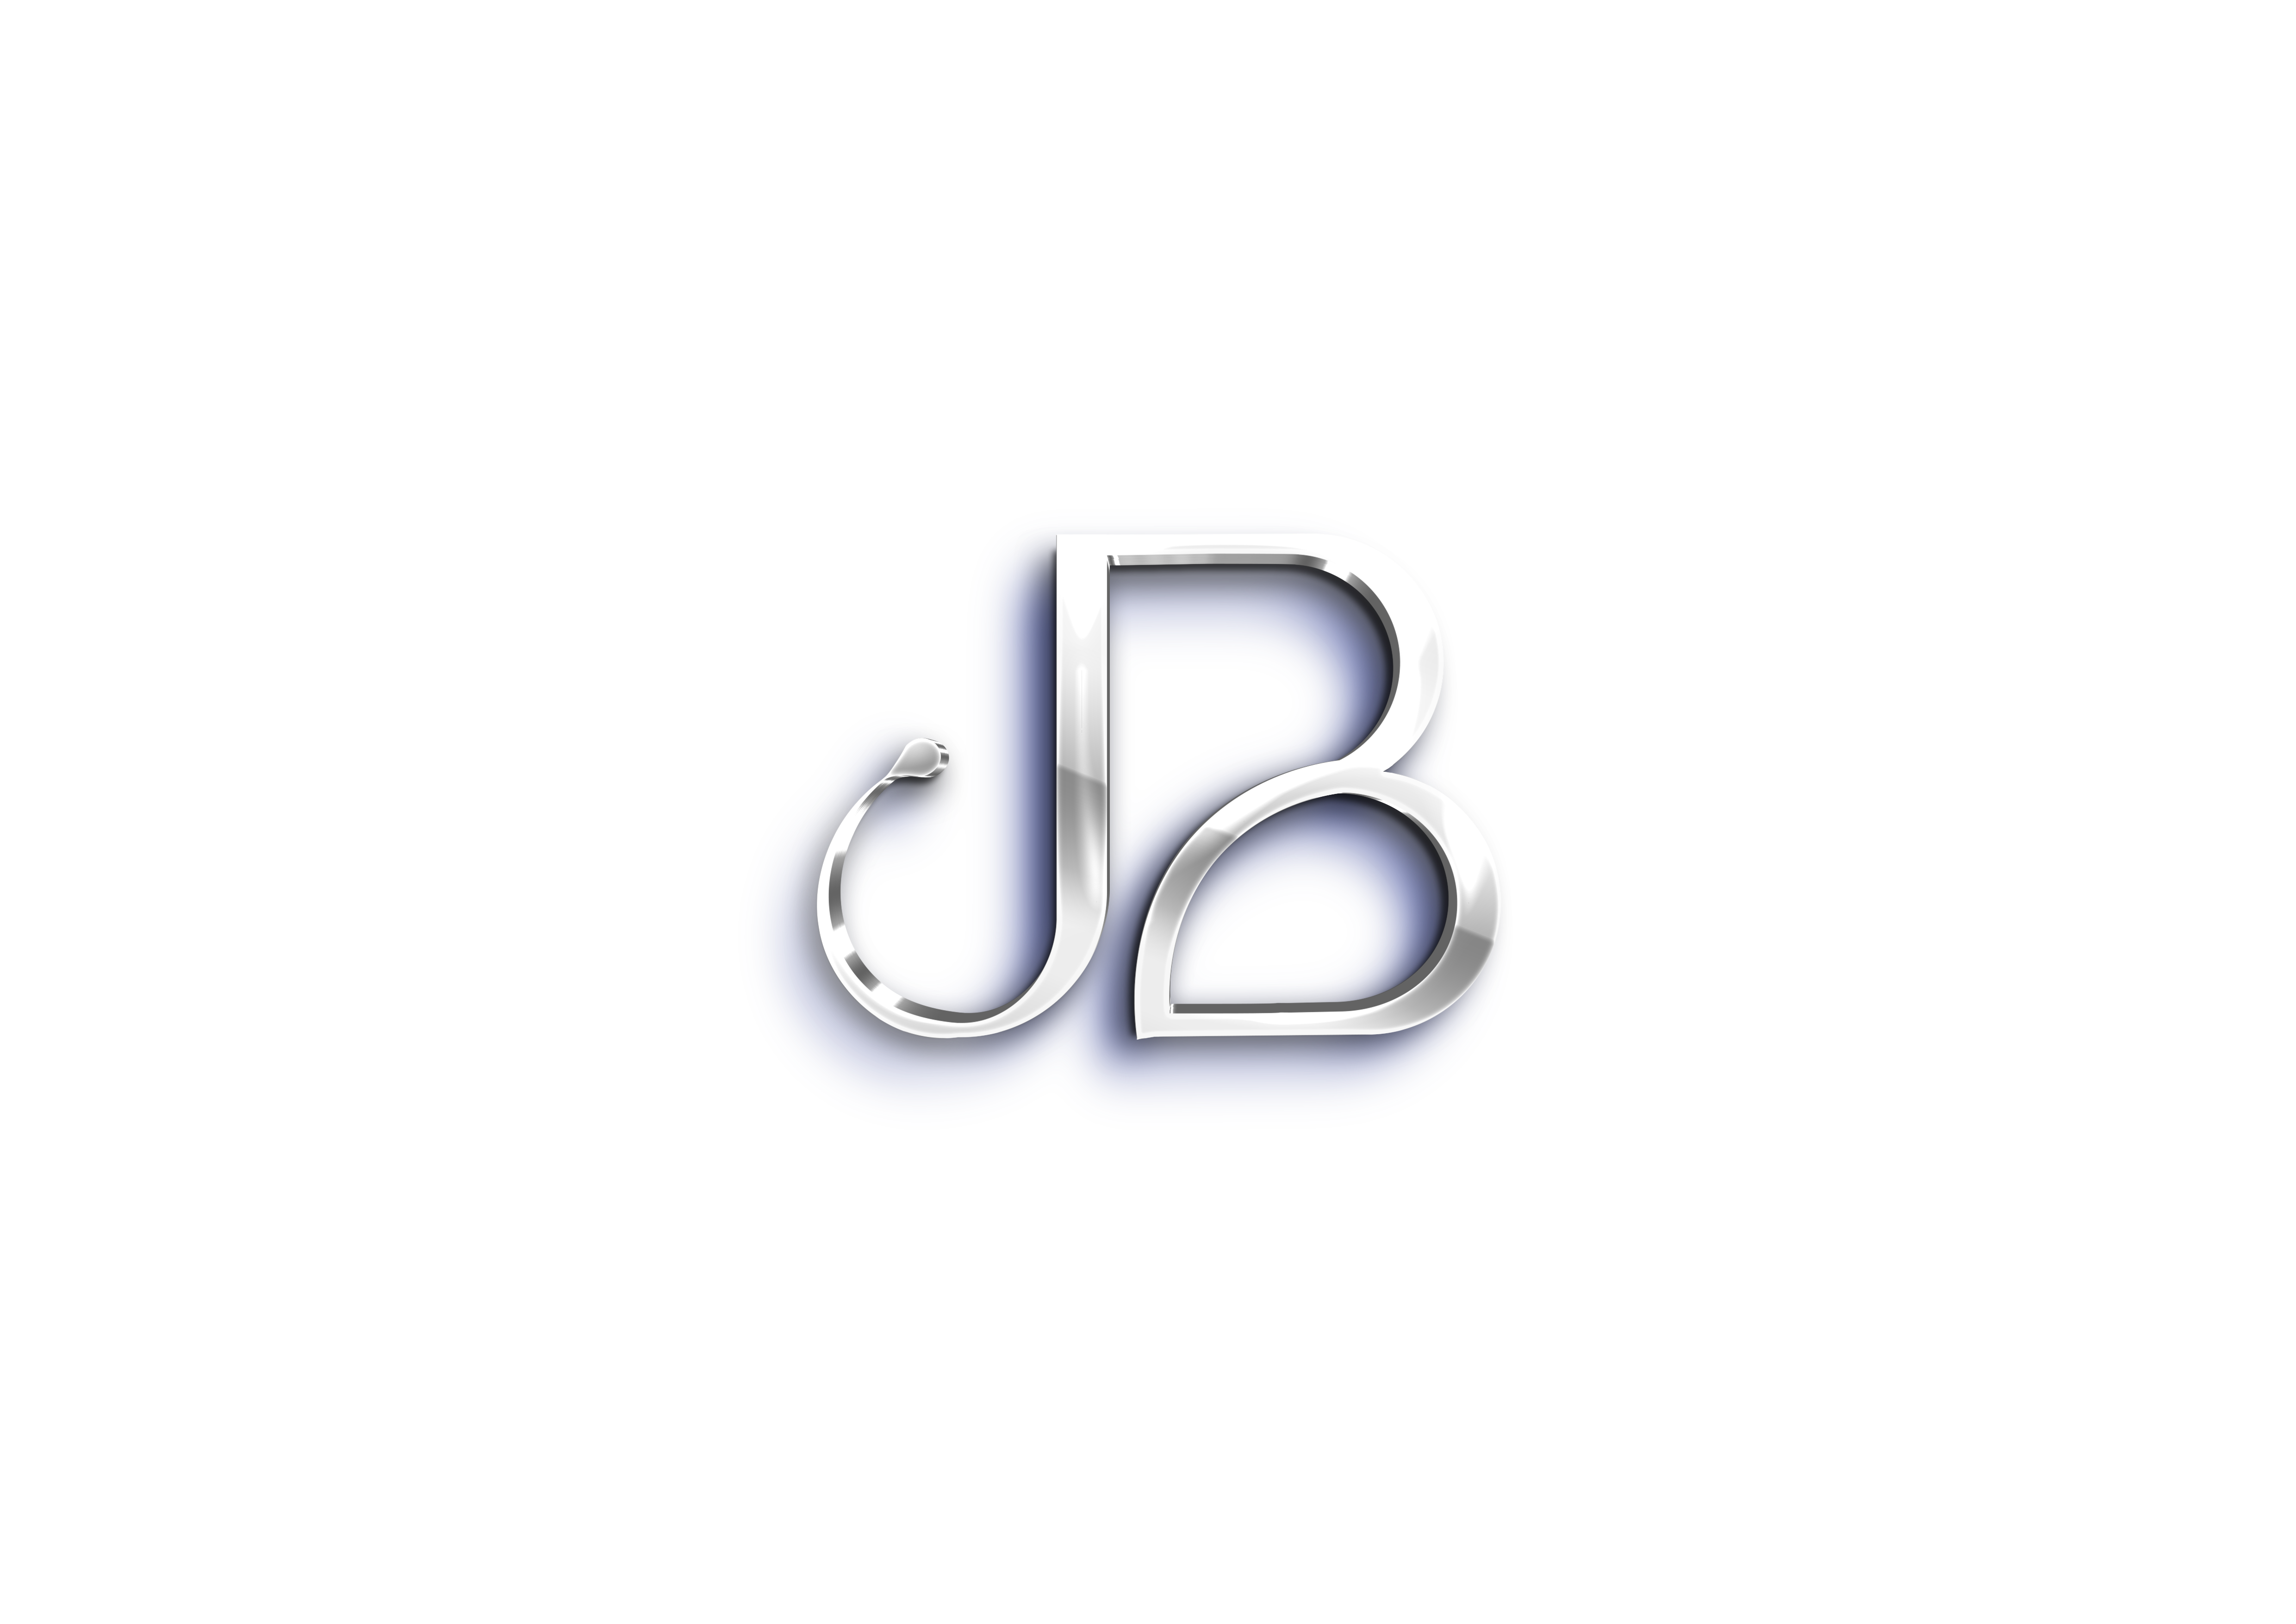 Jb Design